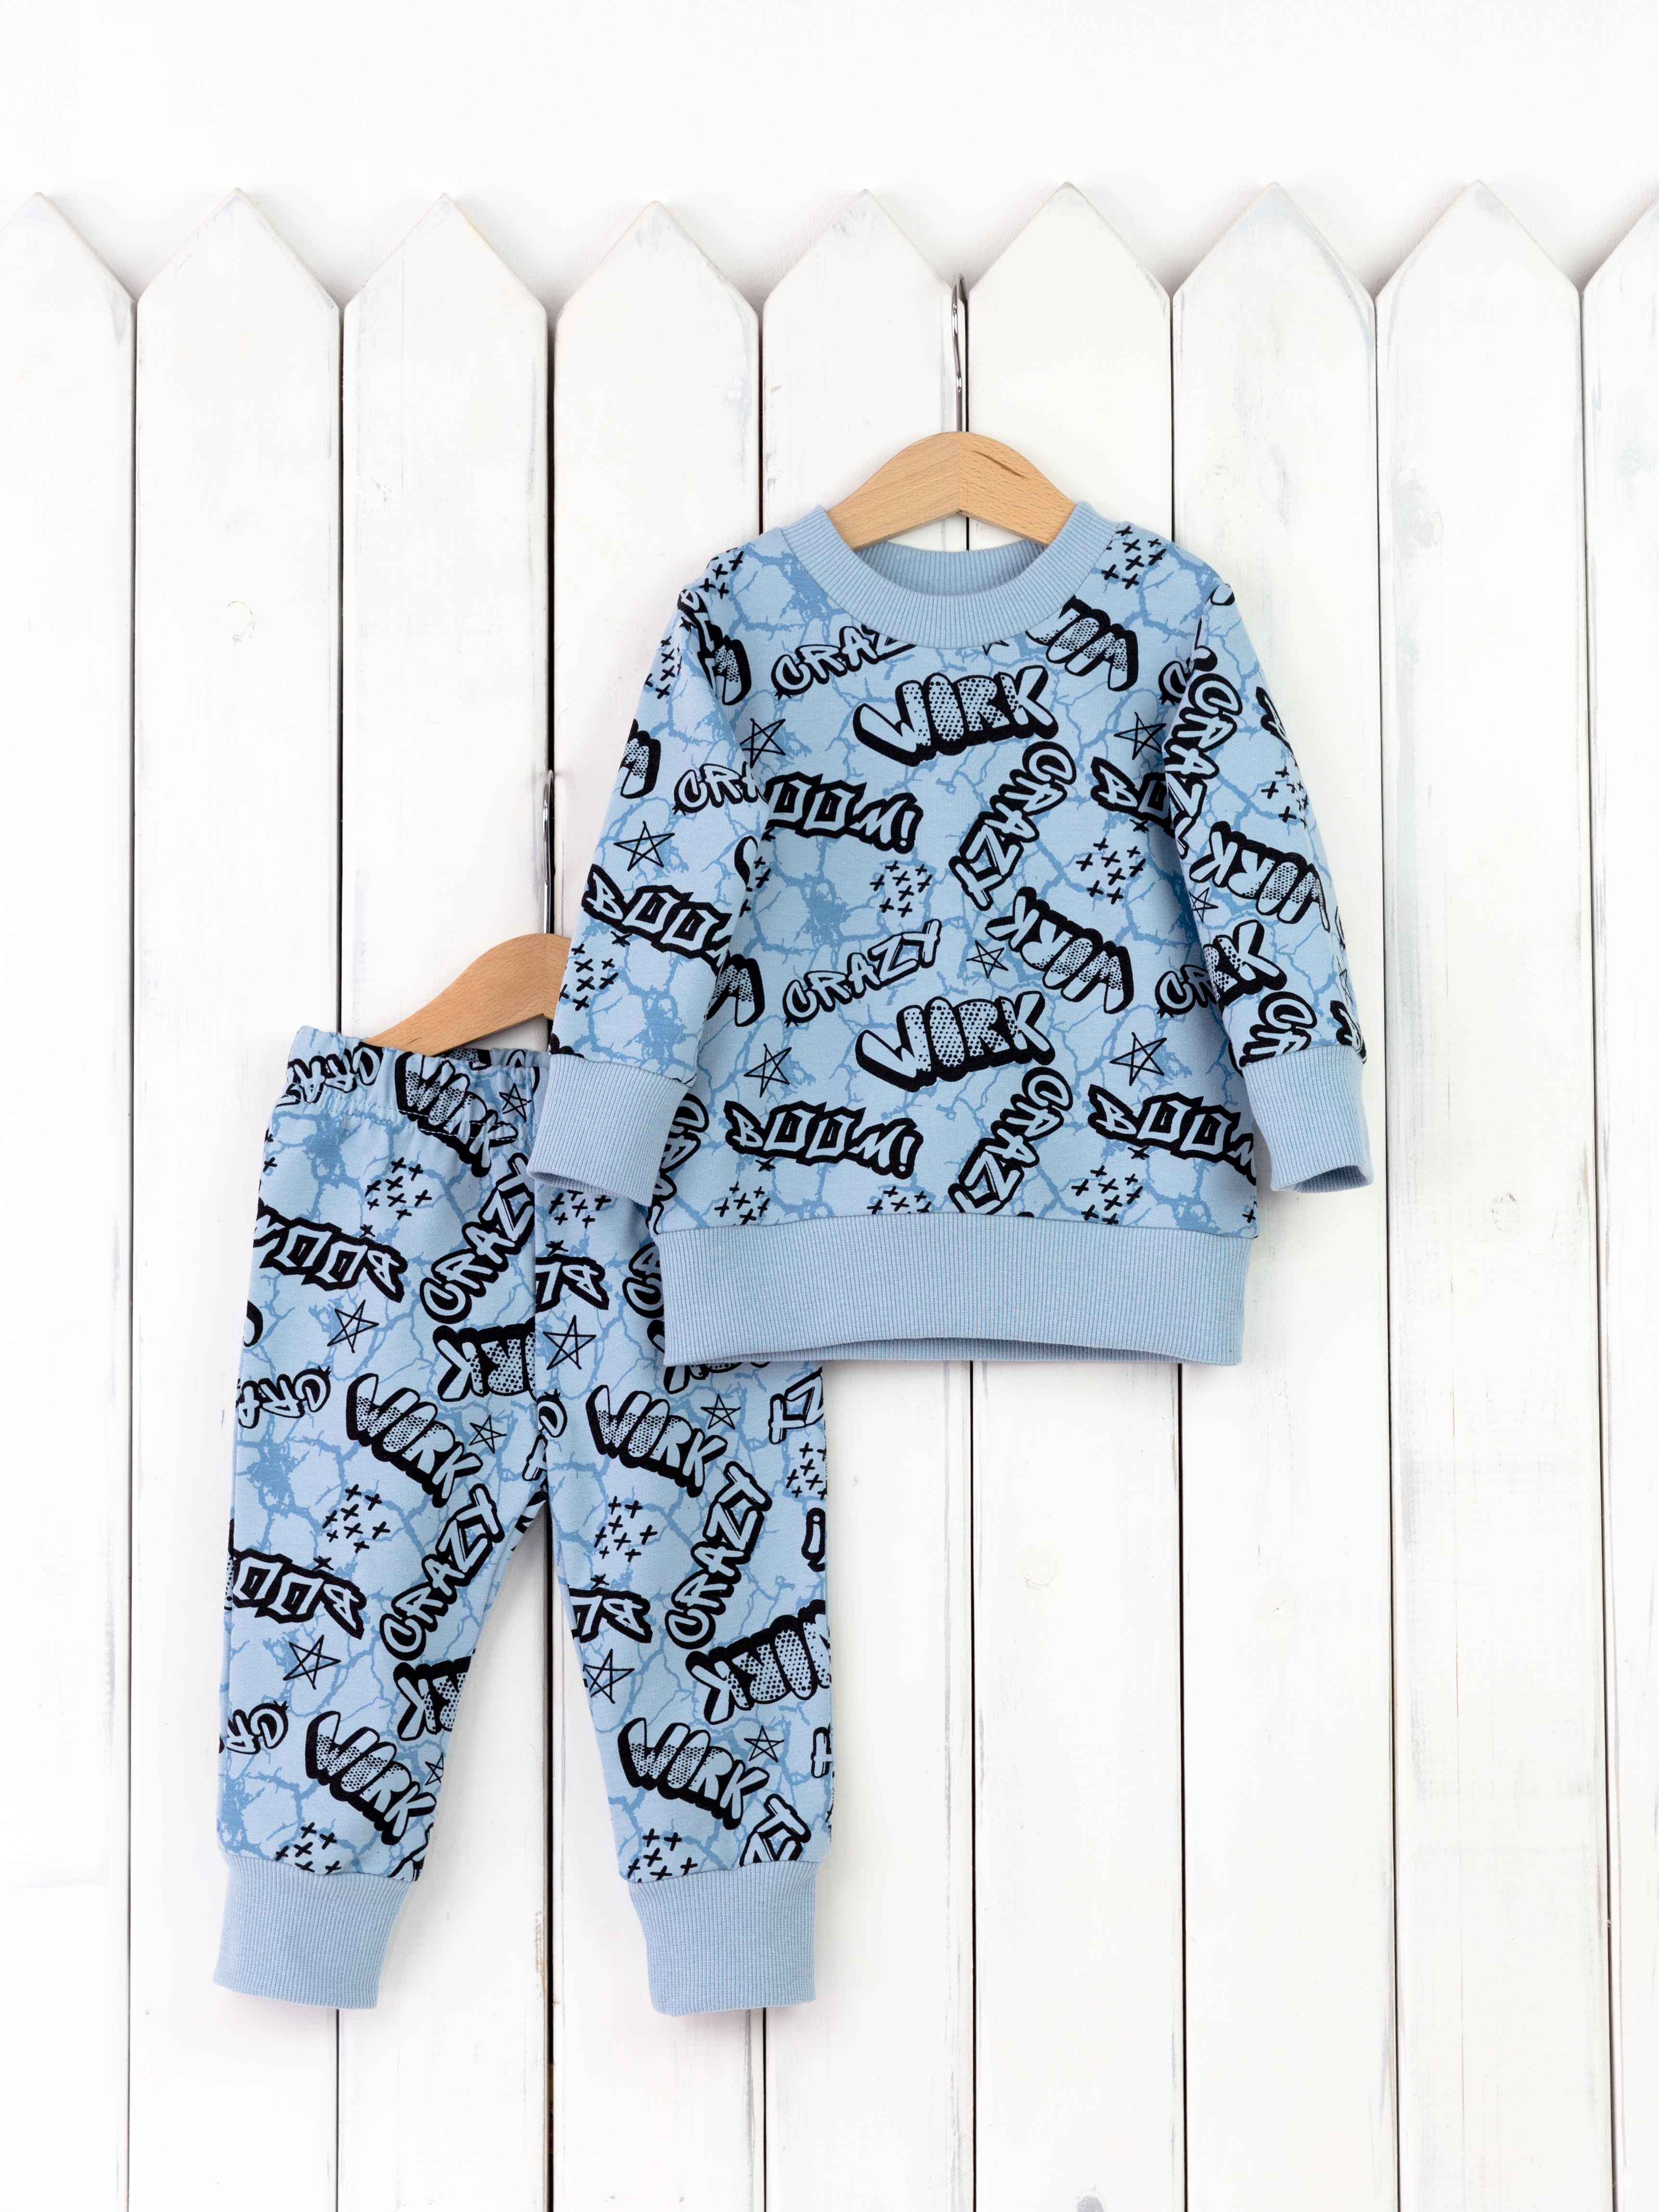 КД402/6-Ф Комплект детский р.86 джемпер+брюки/надписи на голубом Бэби Бум - Орск 